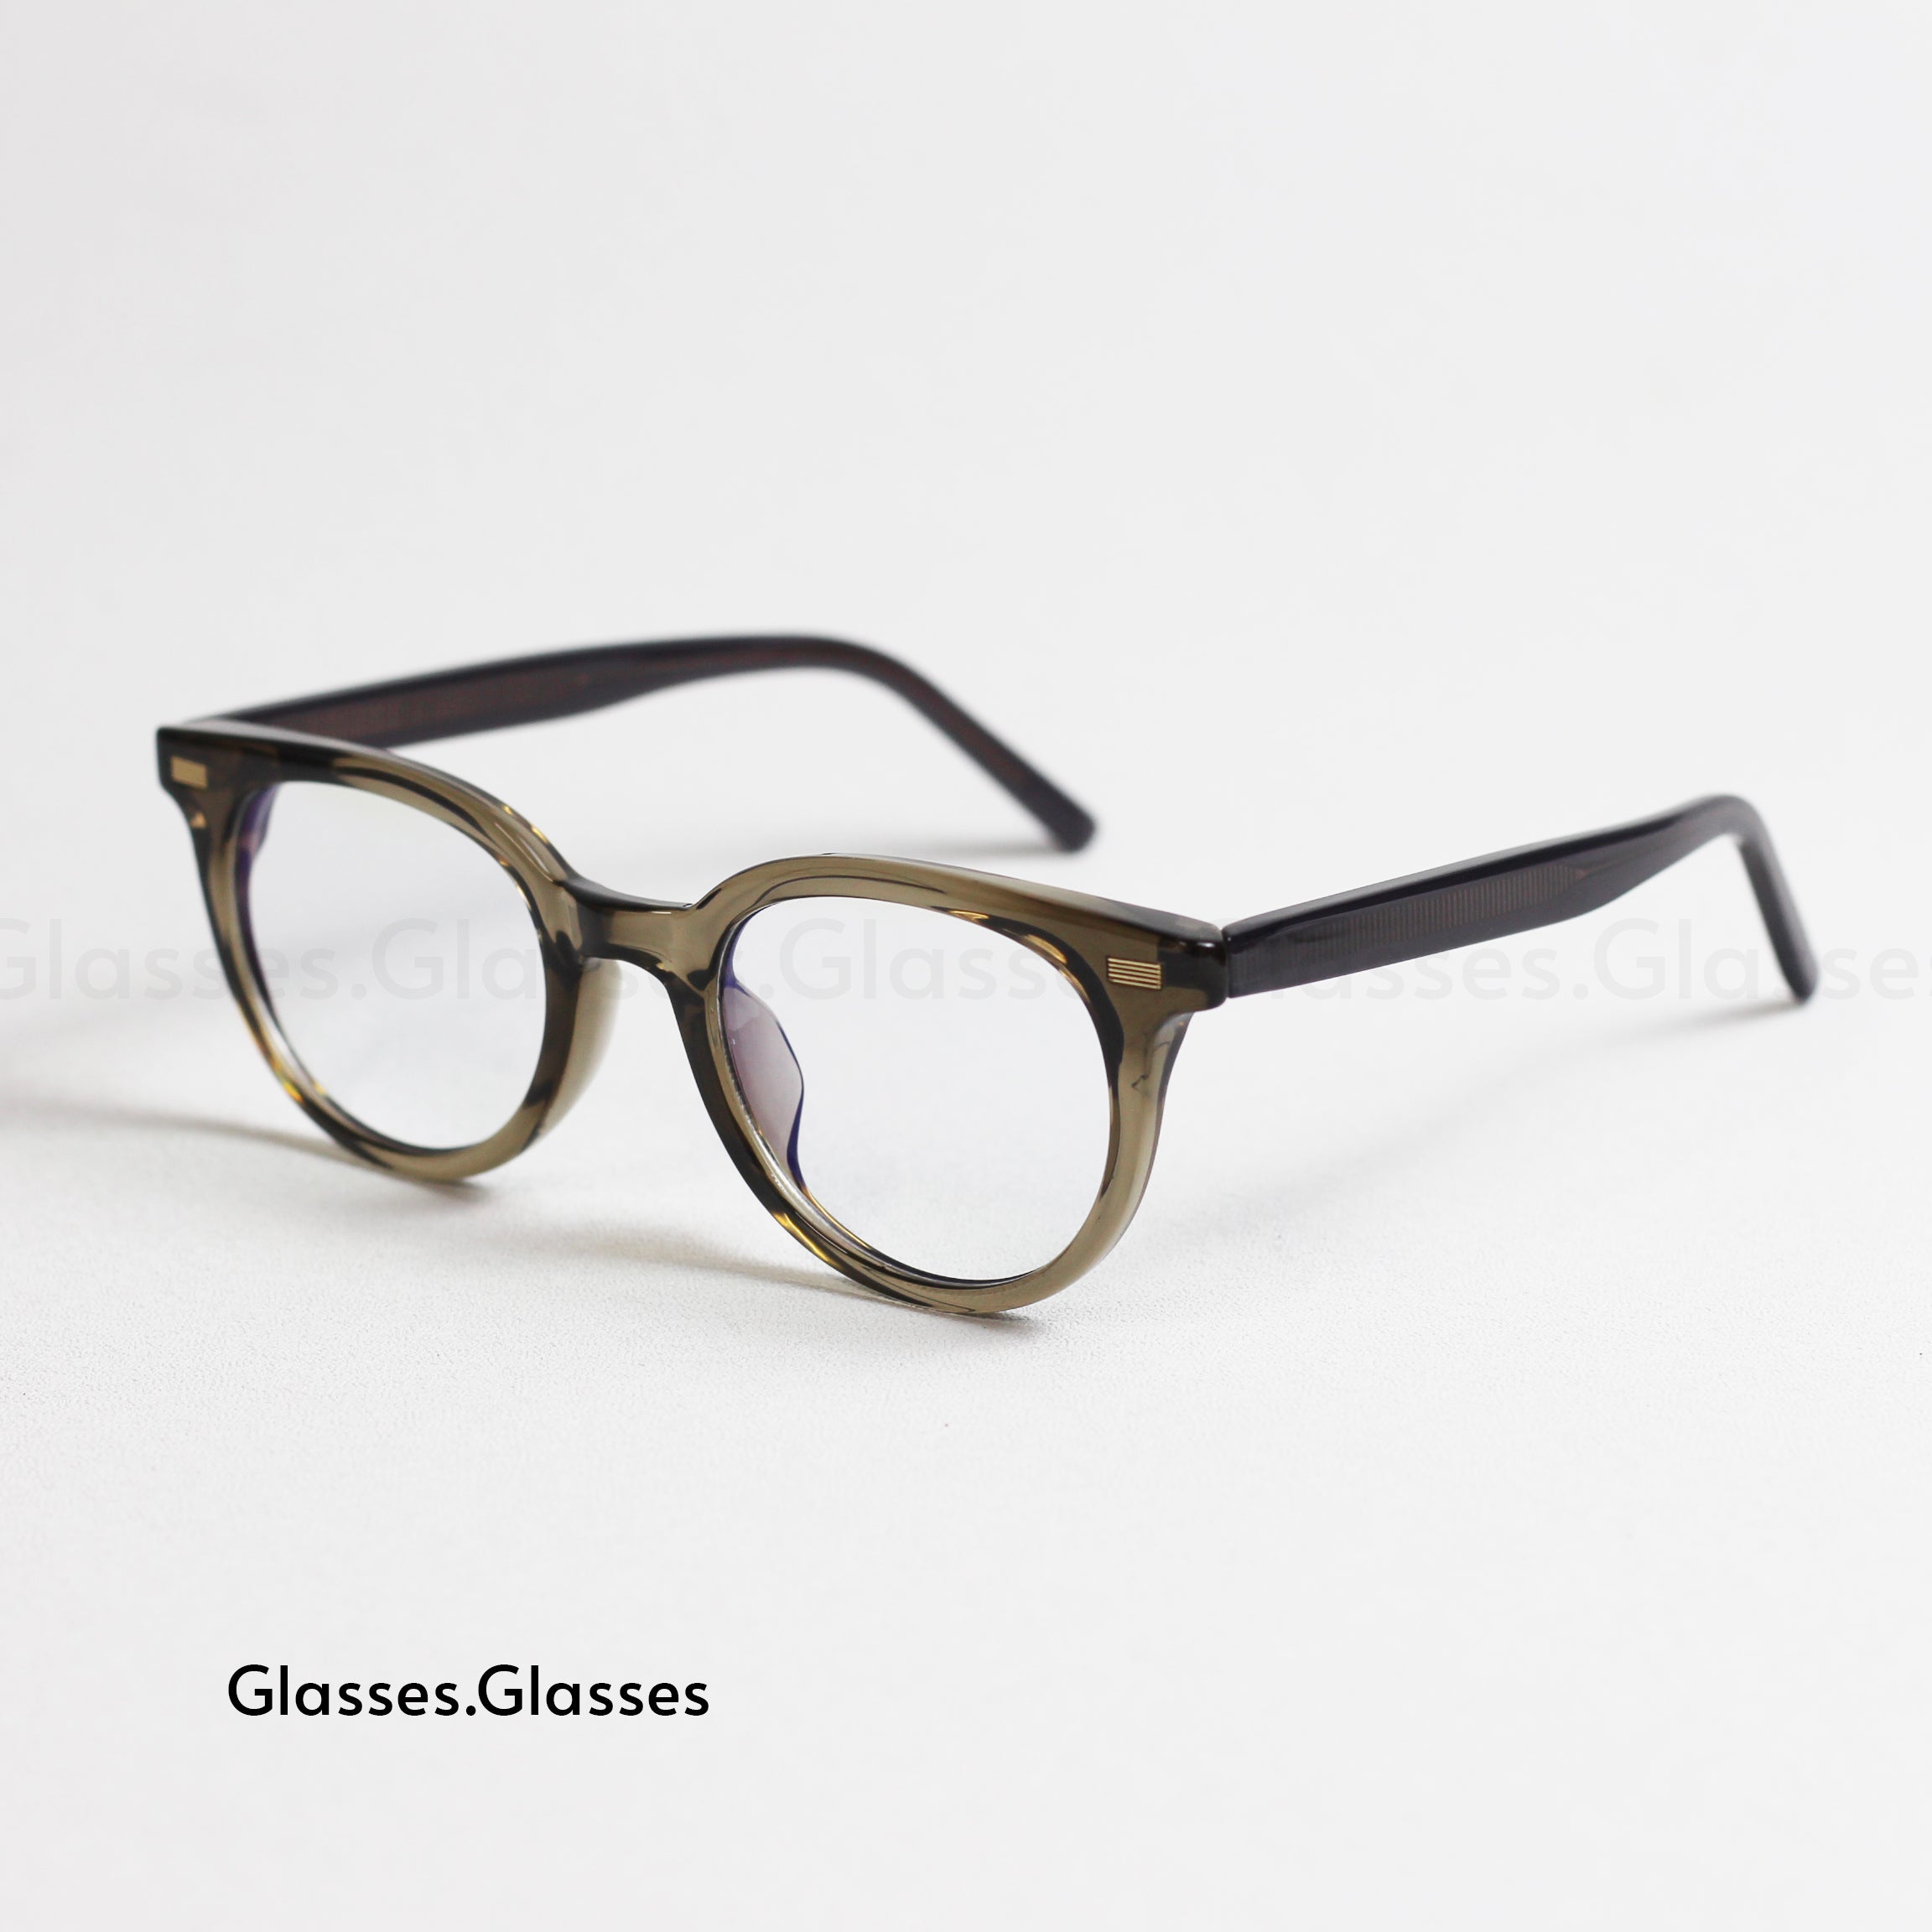 Stanley - Plasic Frame Oval Glasses